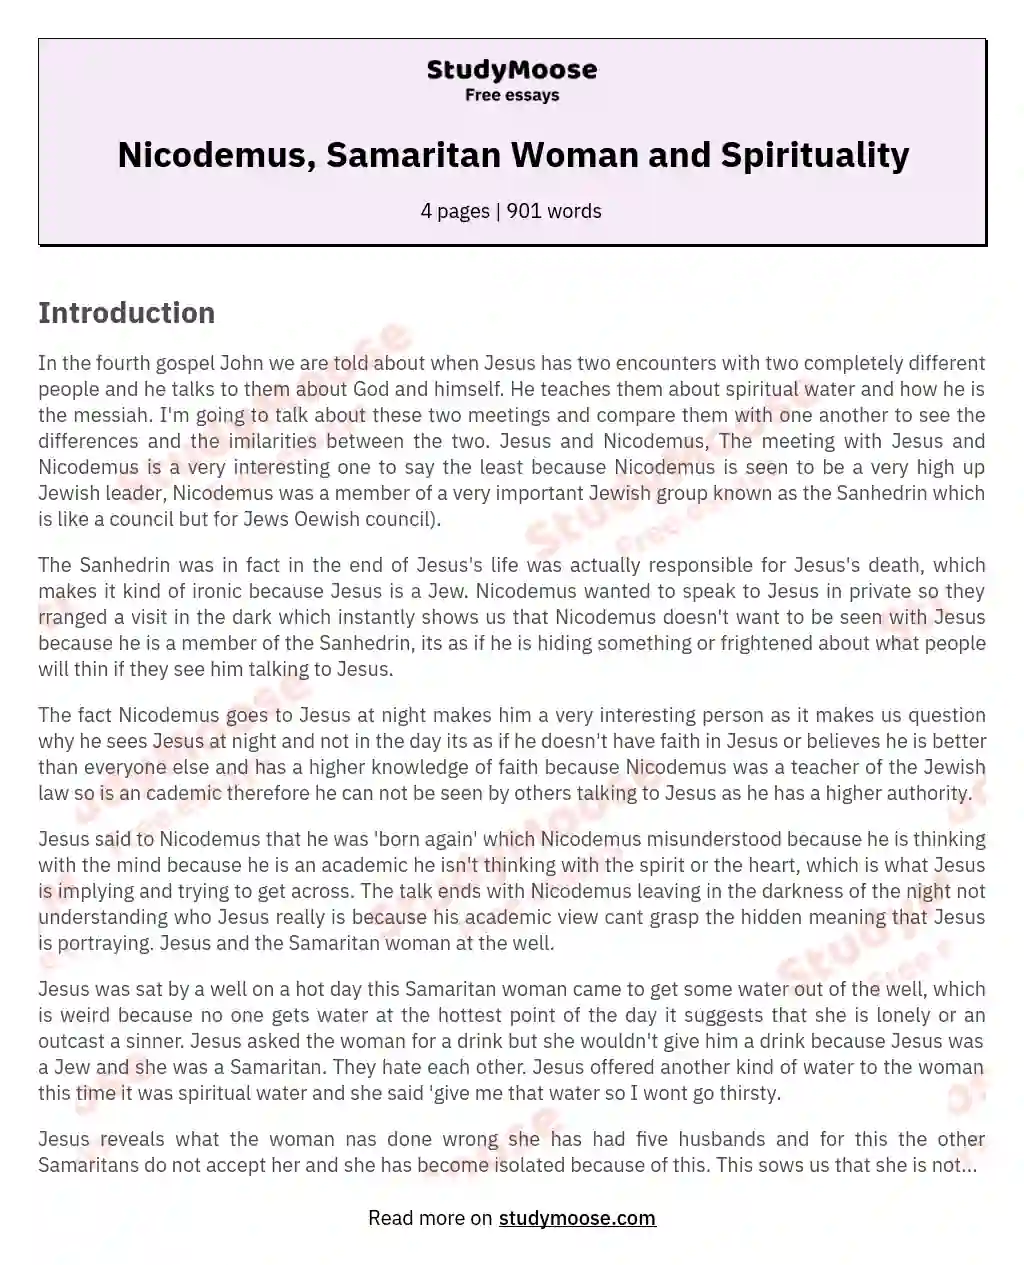 Nicodemus, Samaritan Woman and Spirituality essay